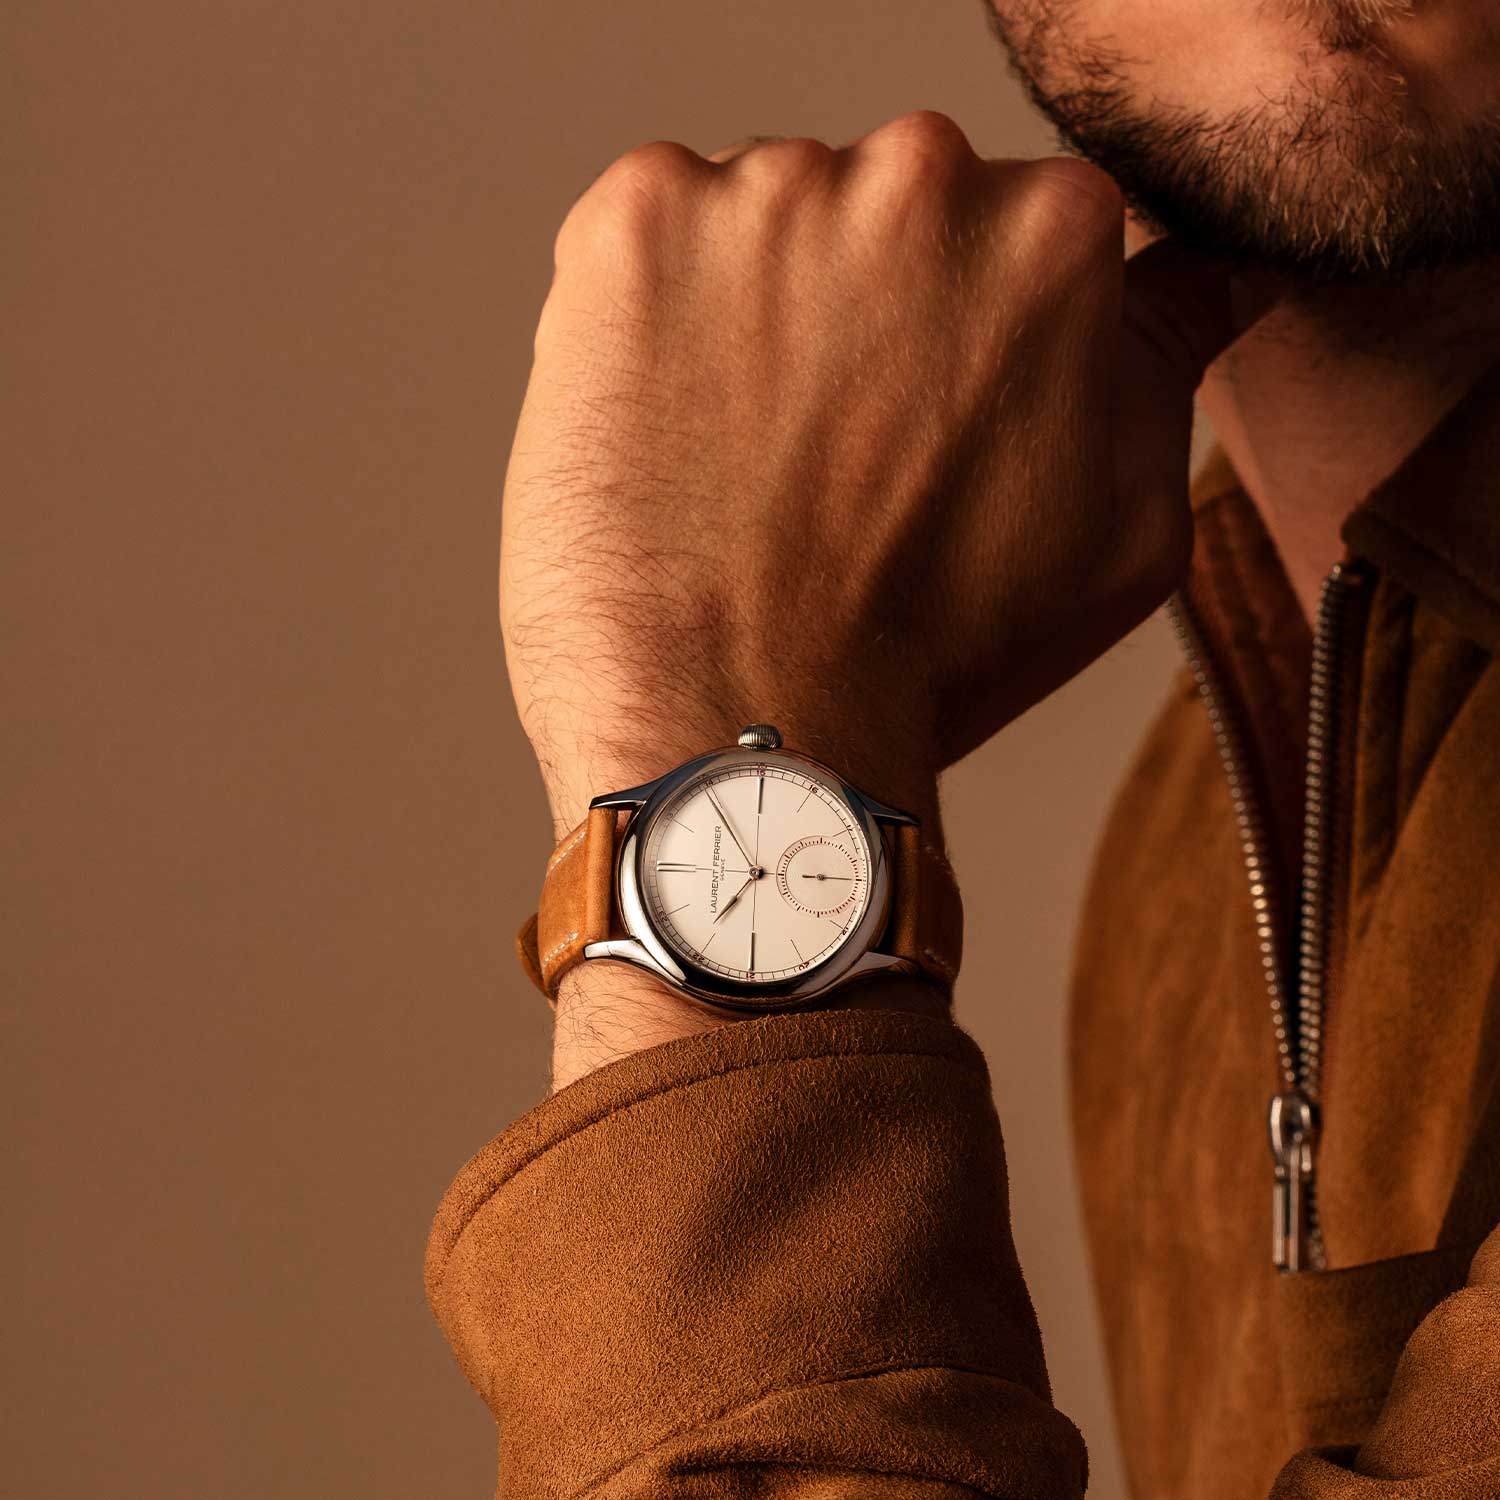 Đồng hồ Laurent Ferrier Classic Origin Opaline với phong cách cổ điển